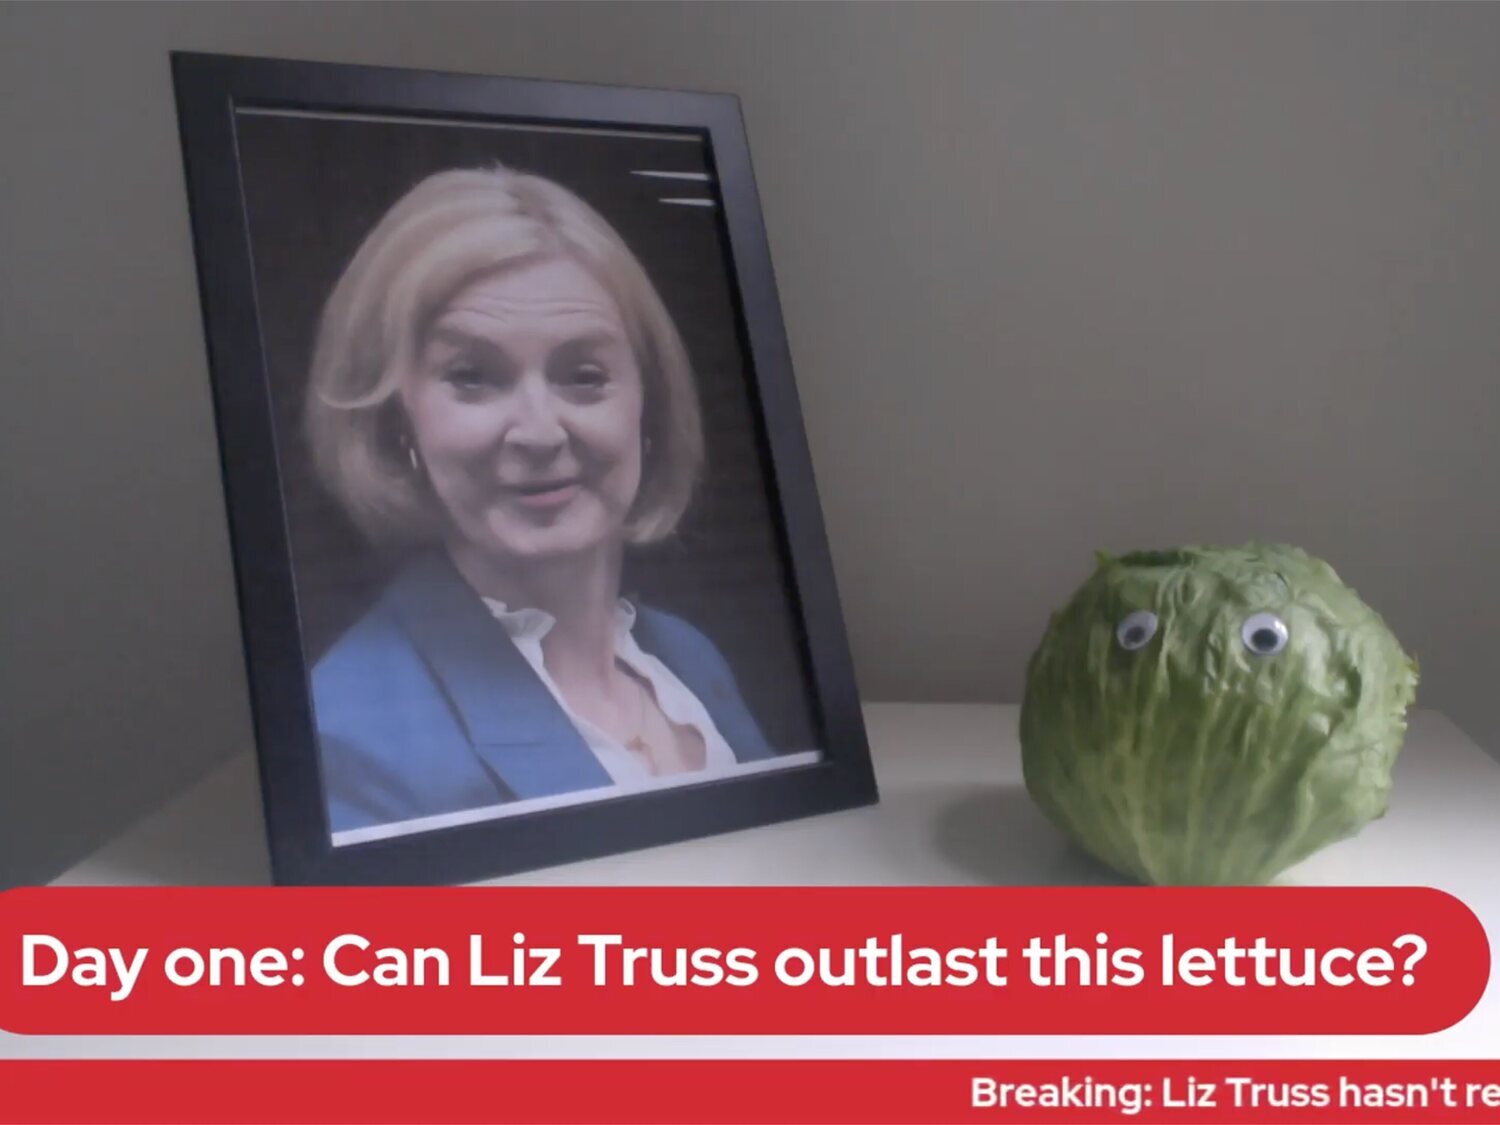 ¿Durará Liz Truss más que esta lechuga? El medio británico Daily Star abre un directo ante la posible caída de la primera ministra